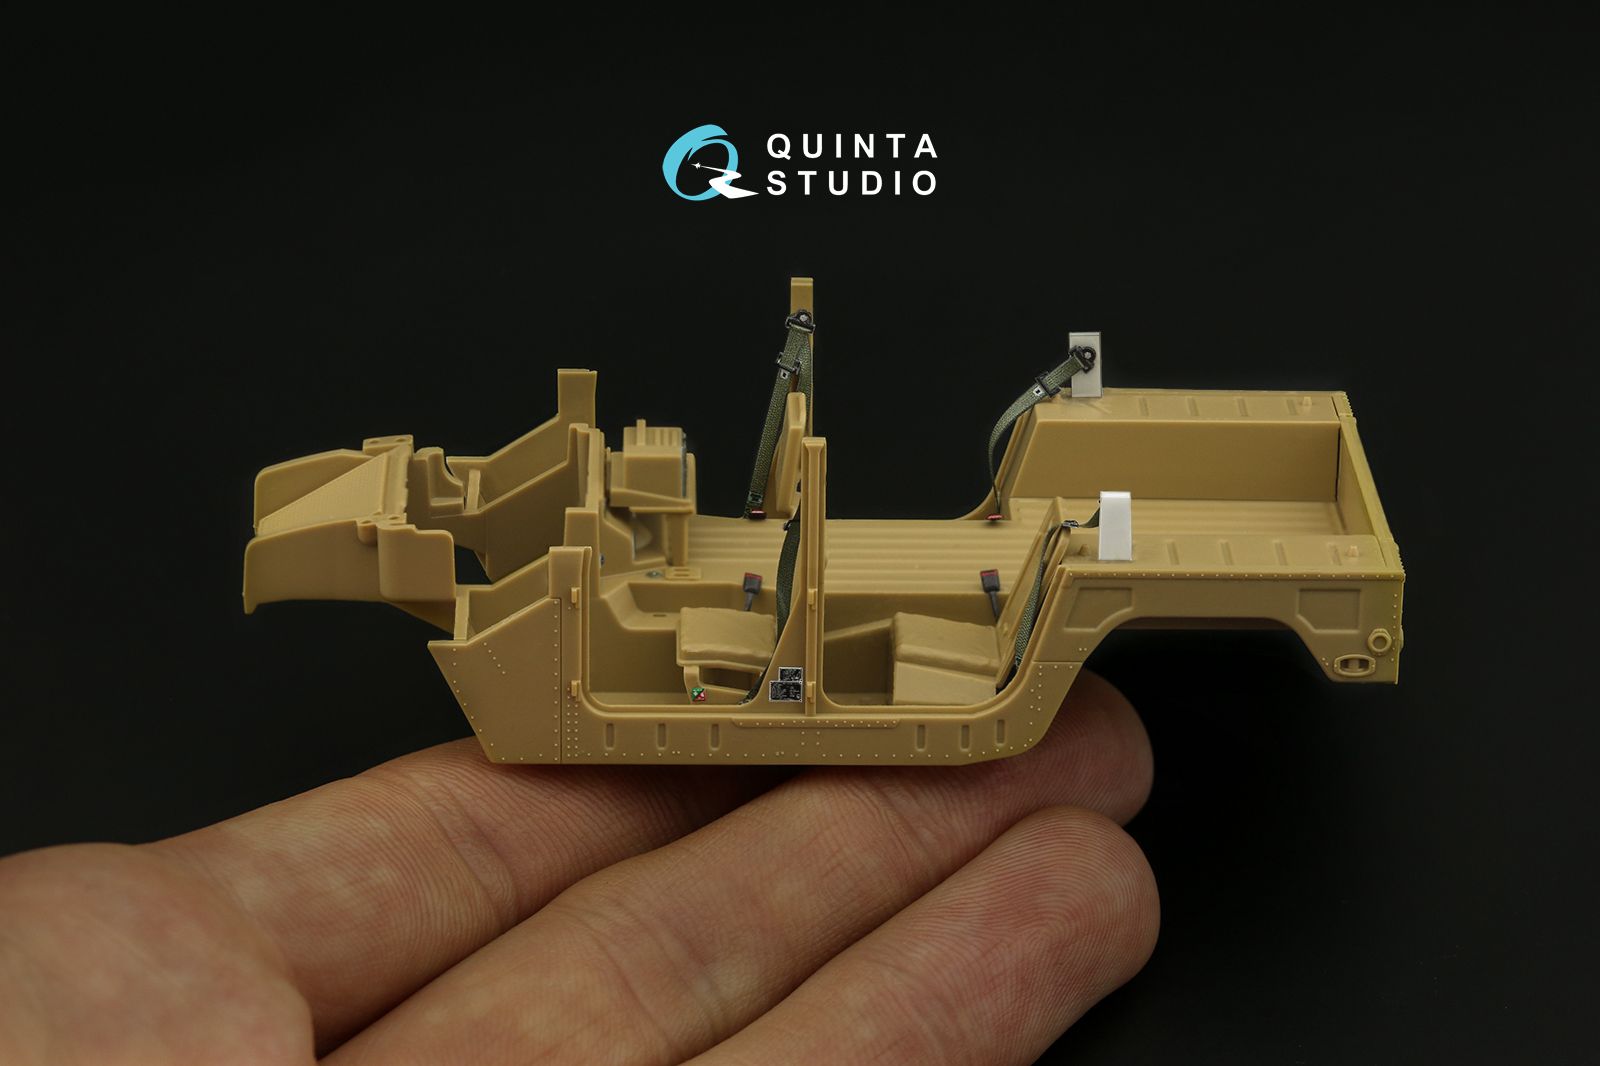 Quinta Studio QD48310 - 3D Декаль интерьера кабины для семейства HUMVEE (Tamiya)